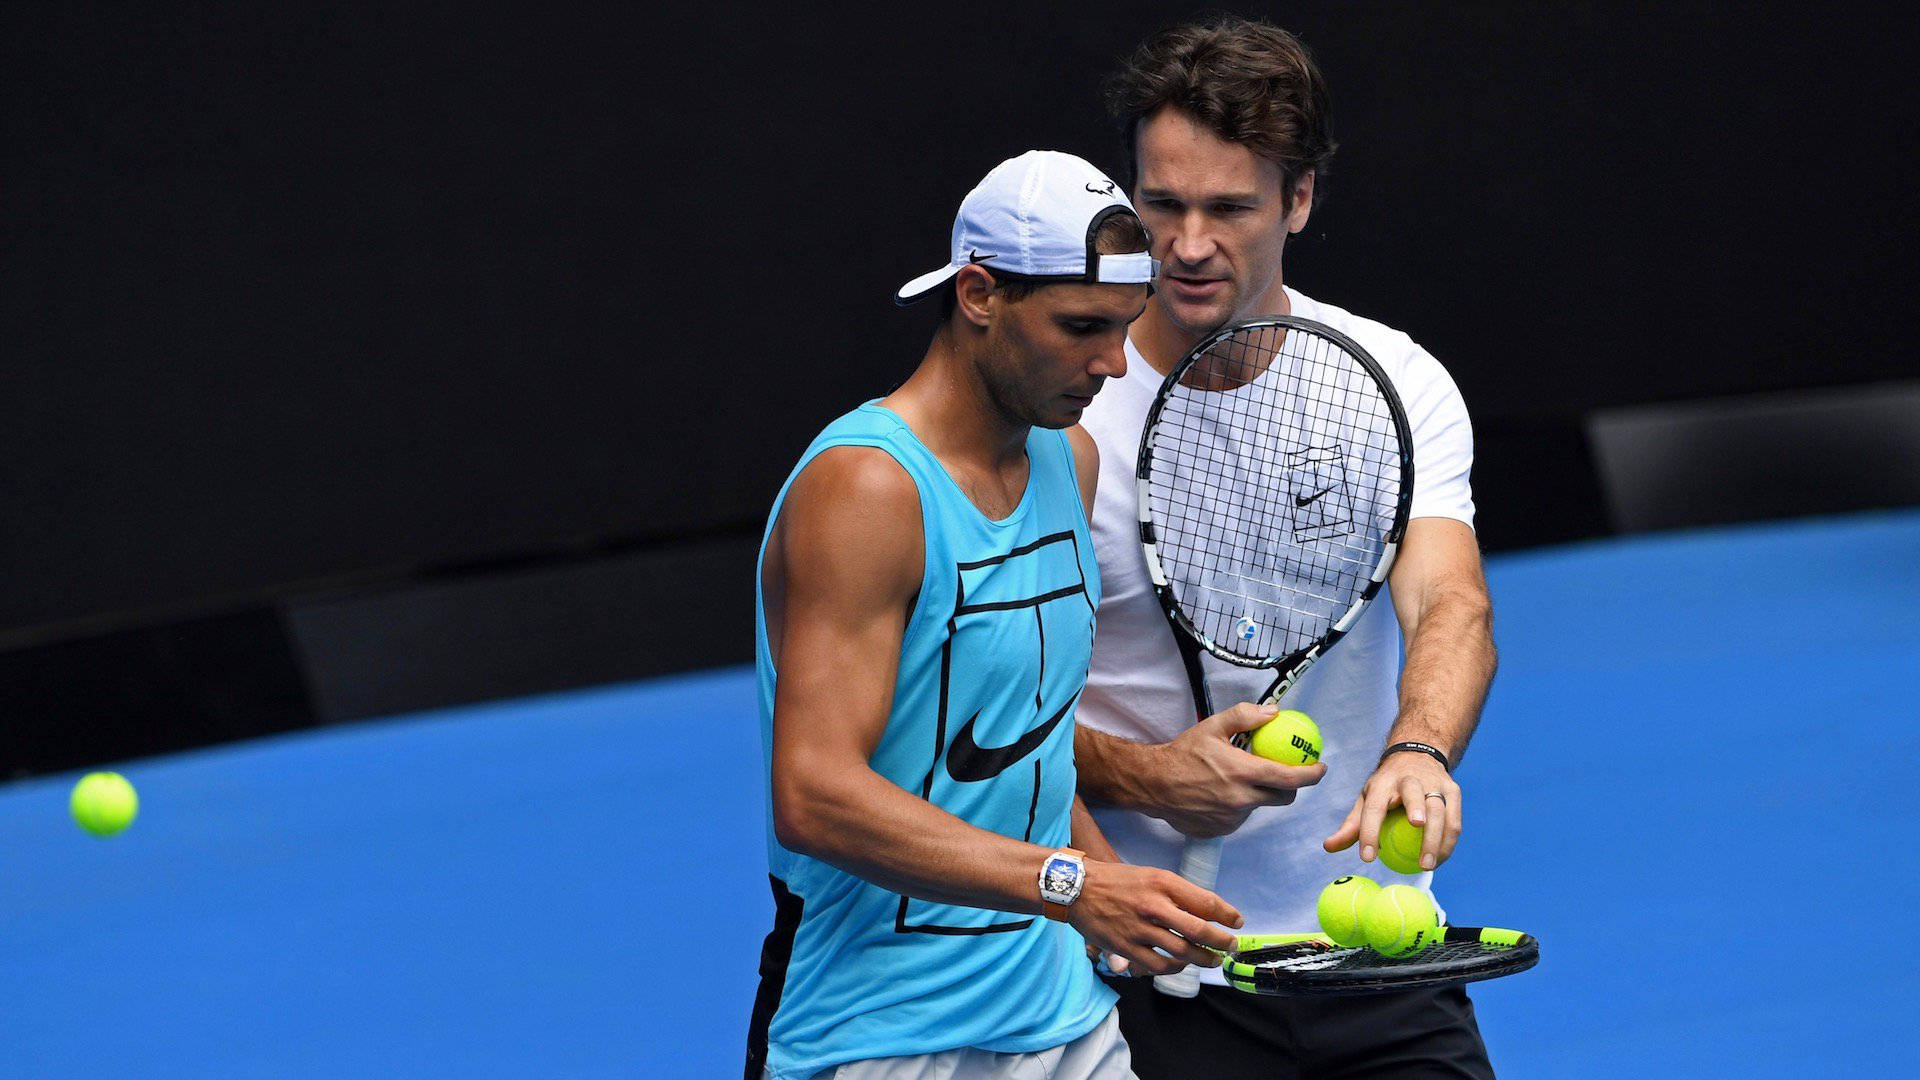 Carlos Moya giver bolde til Nadal. Wallpaper